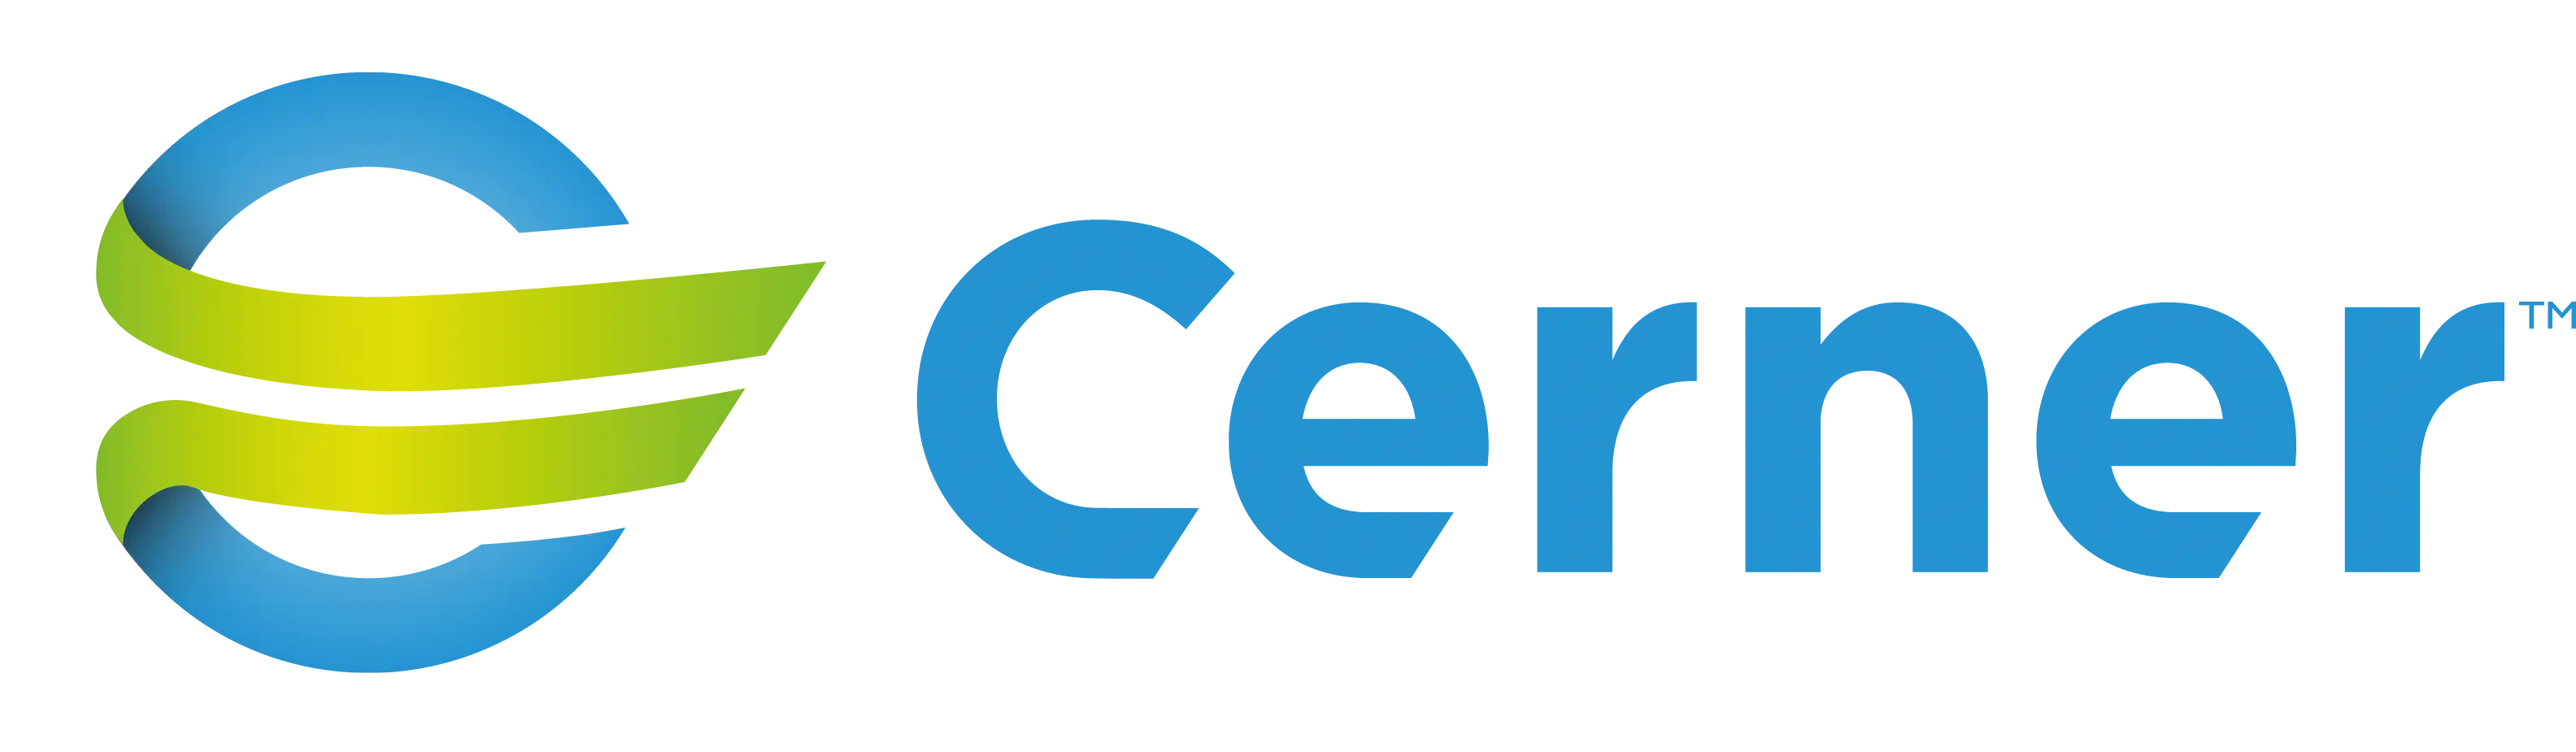 Cerner-Corporation